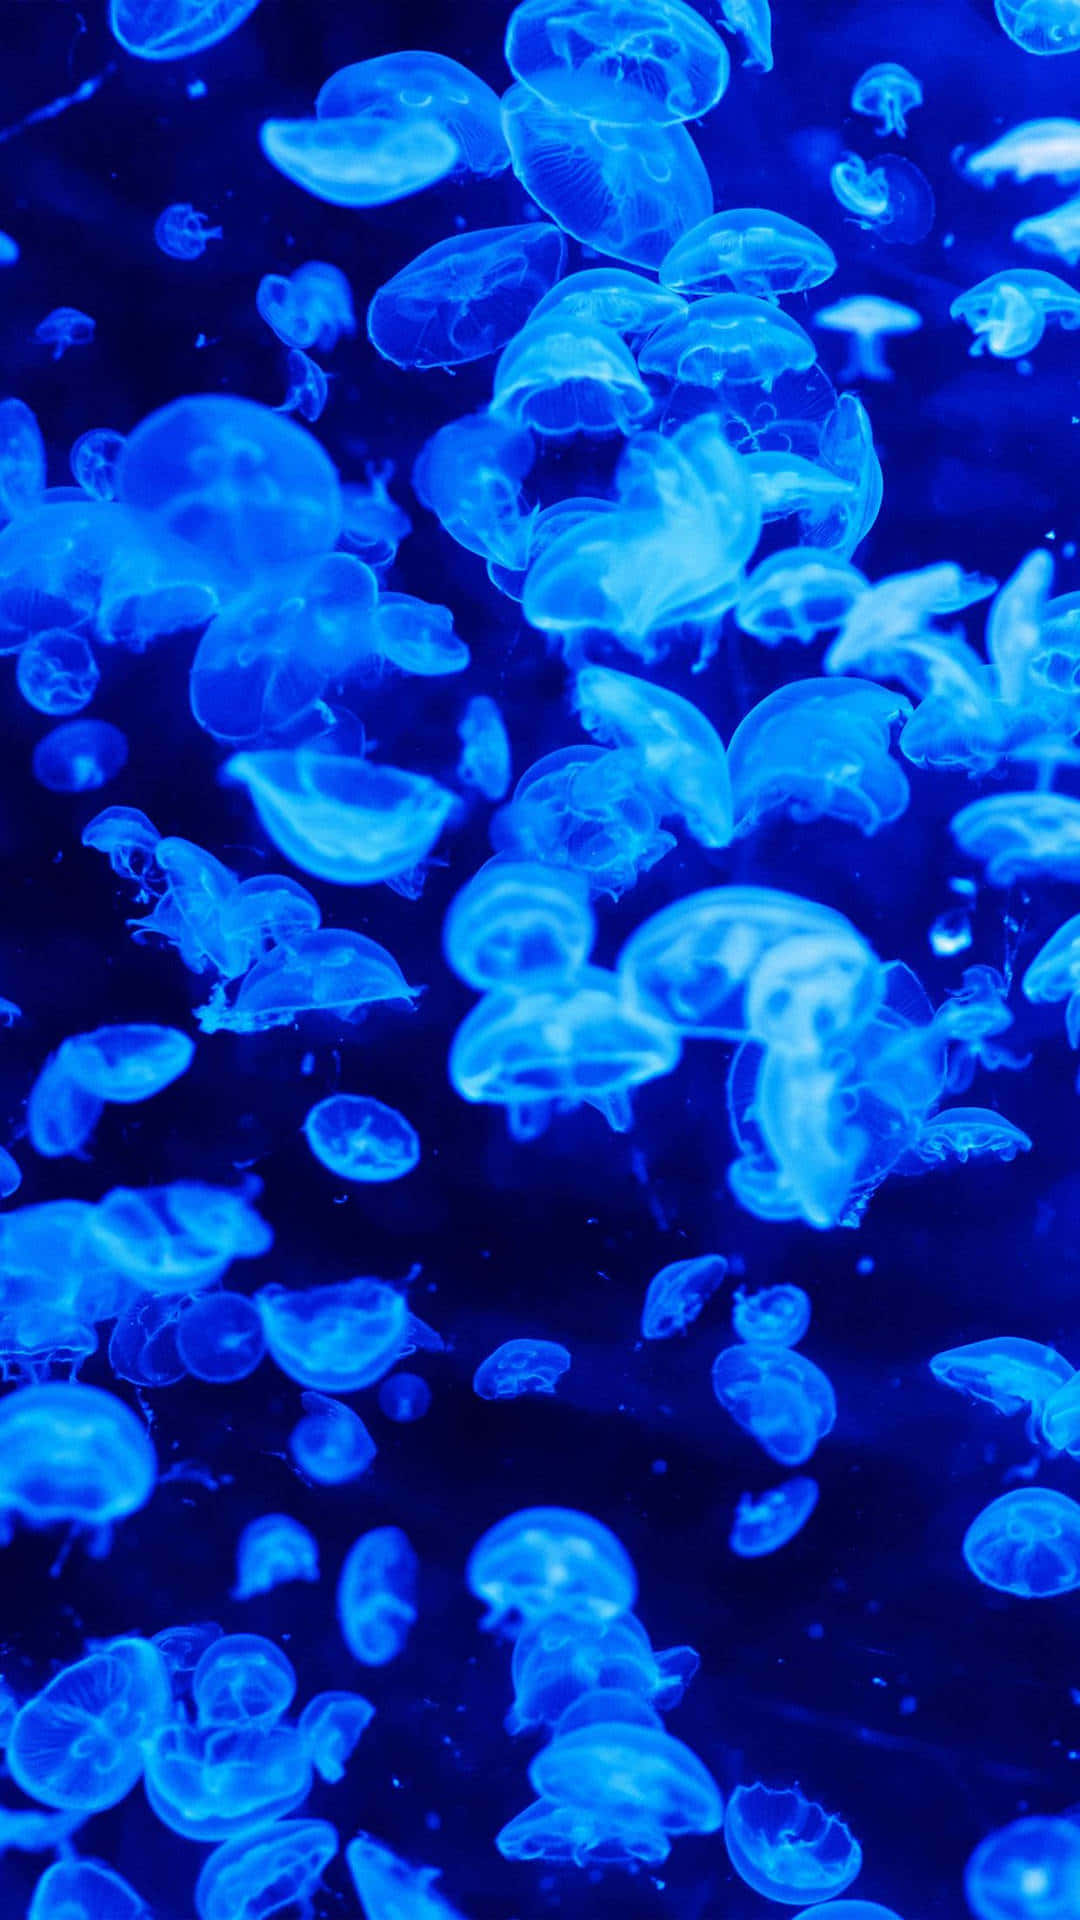 Blue Jellyfish Underwater Swarm.jpg Wallpaper